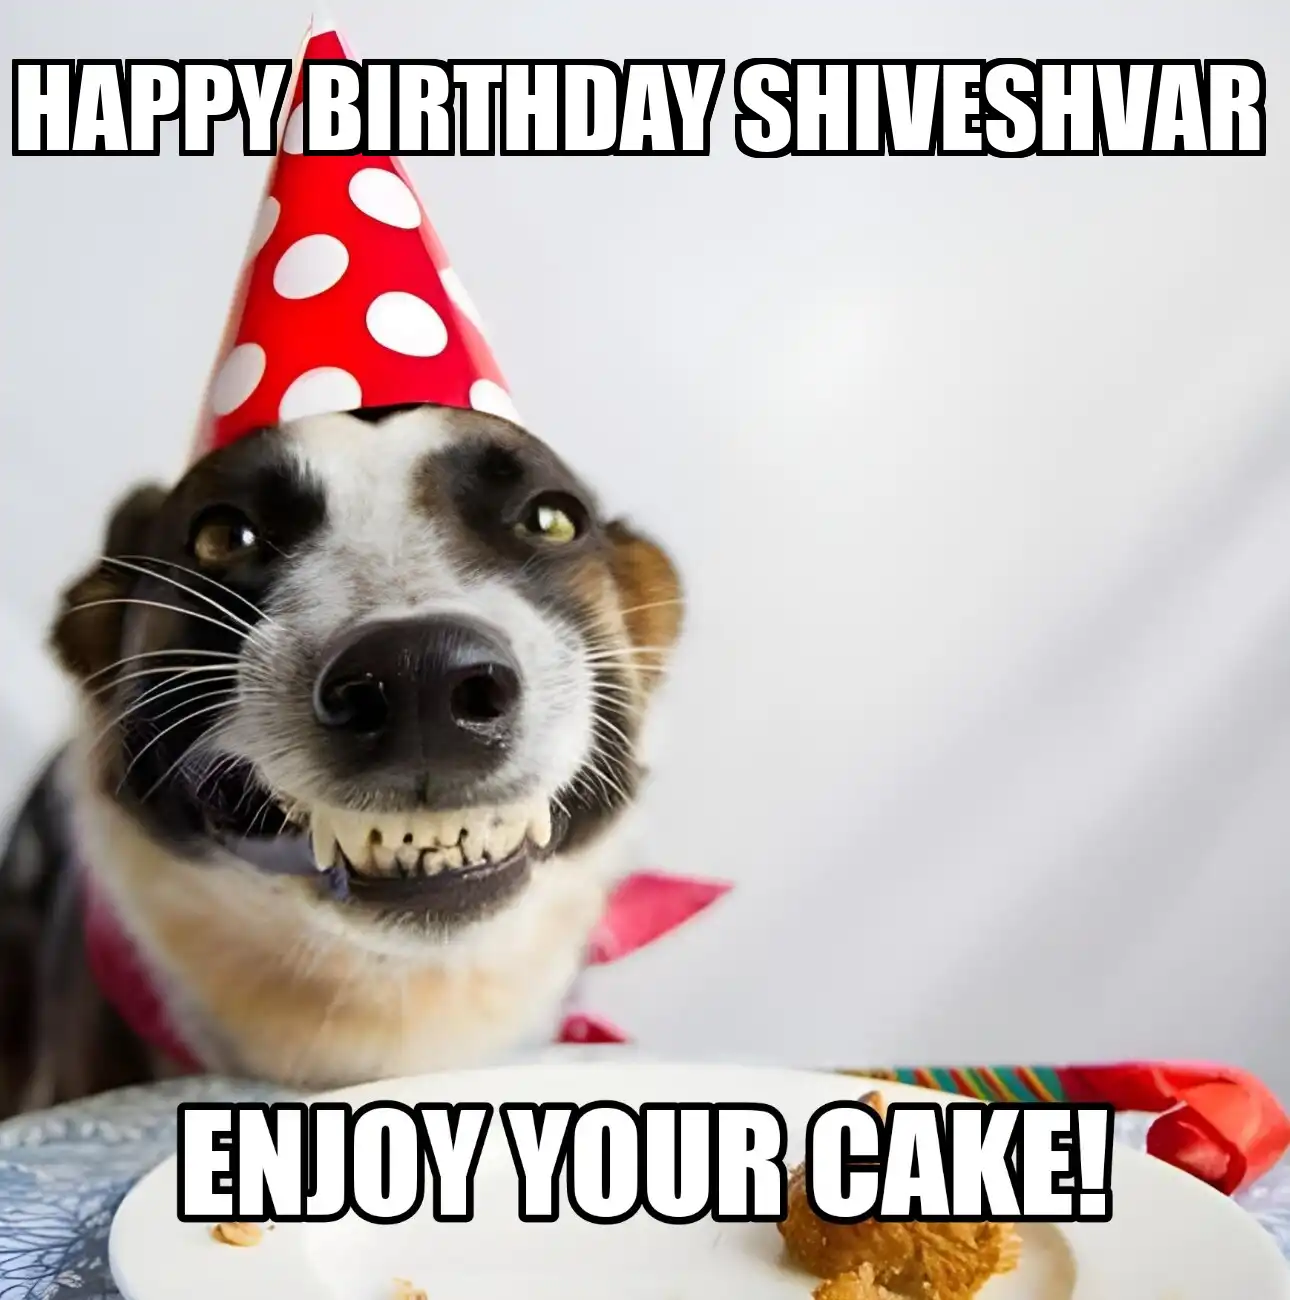 Happy Birthday Shiveshvar Enjoy Your Cake Dog Meme